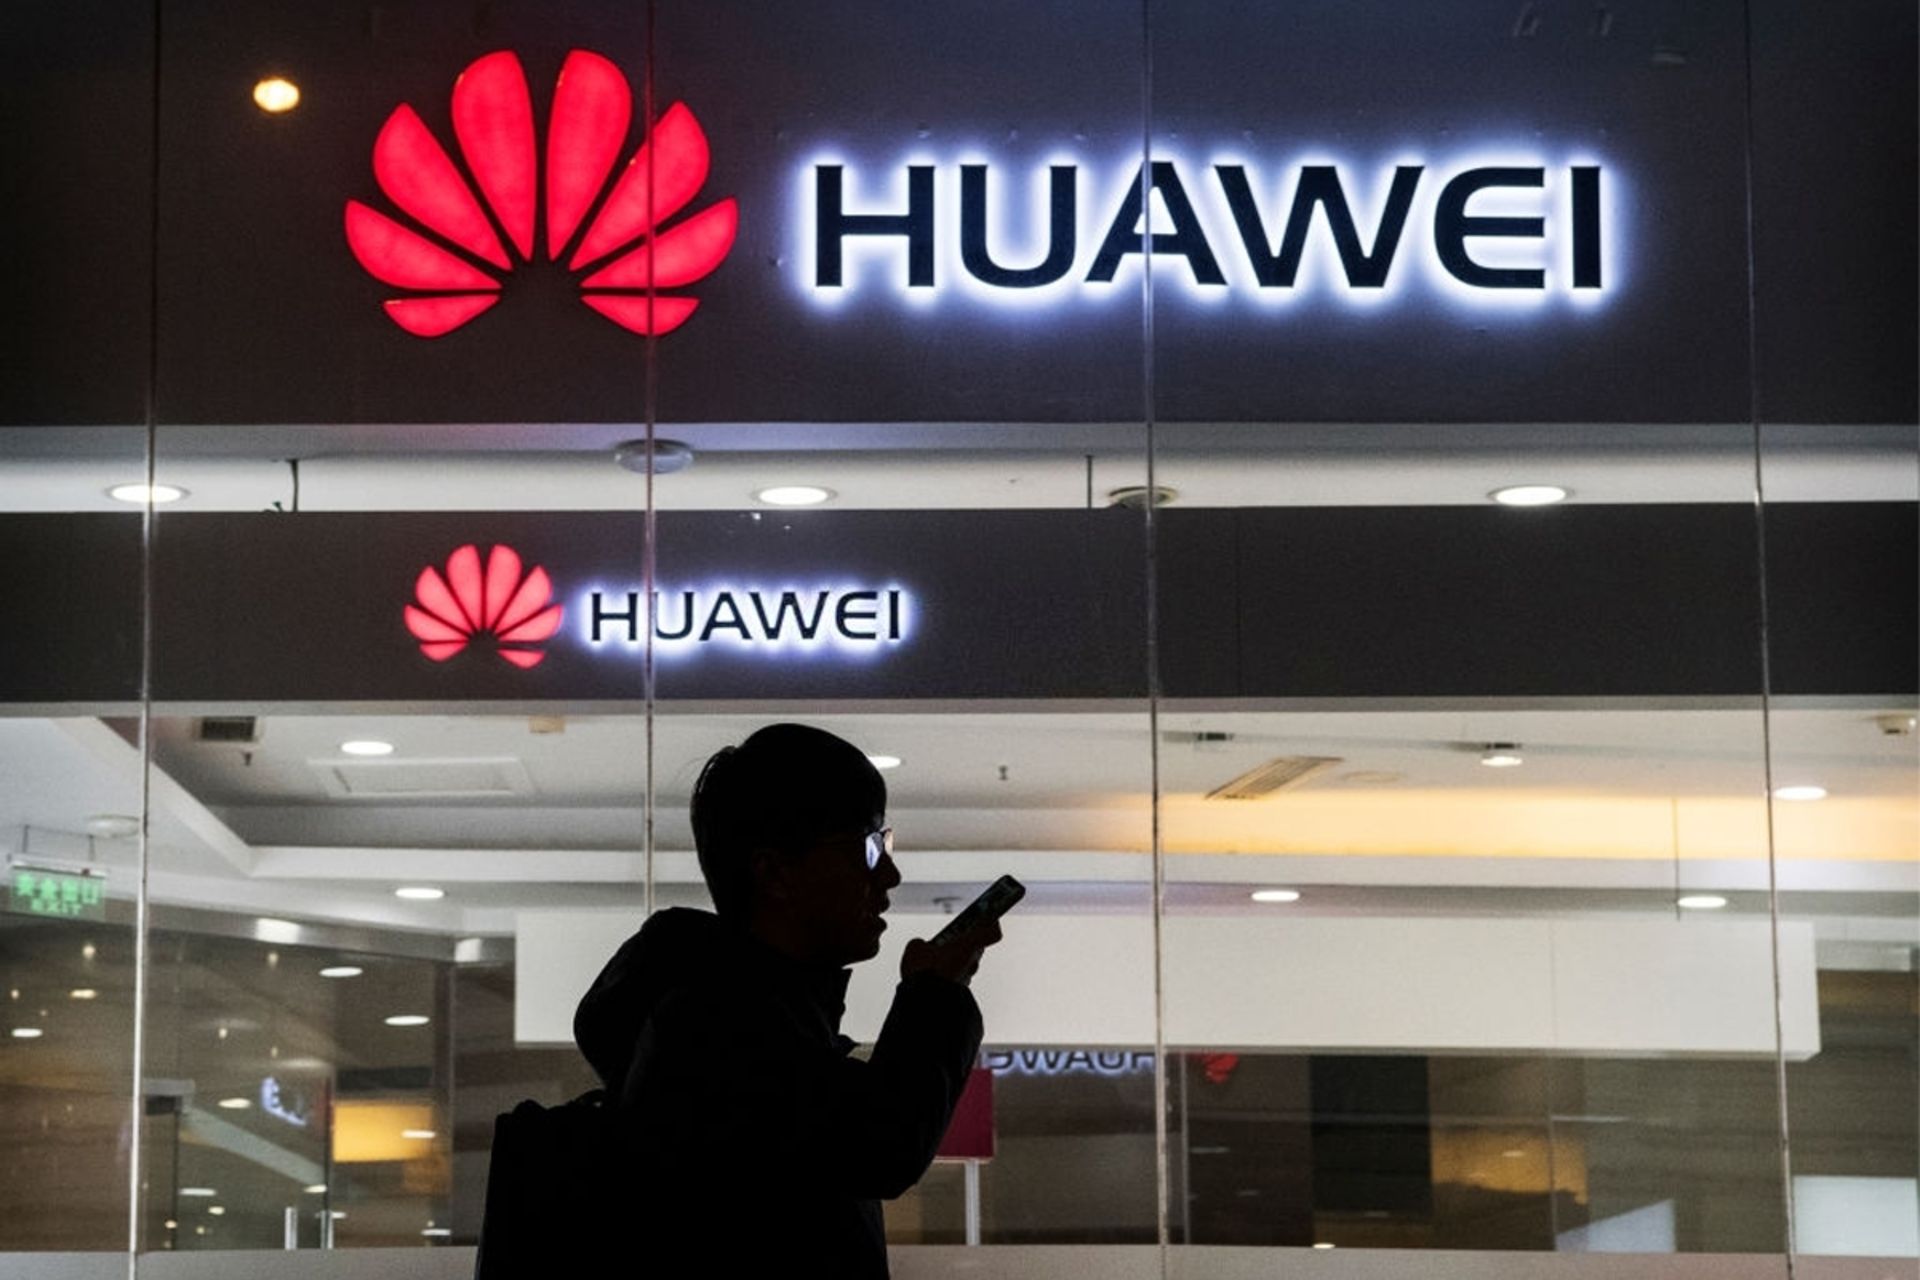 لوگو هواوی / Huawei روی ساختمان، فردی درحال صحبت با تلفن